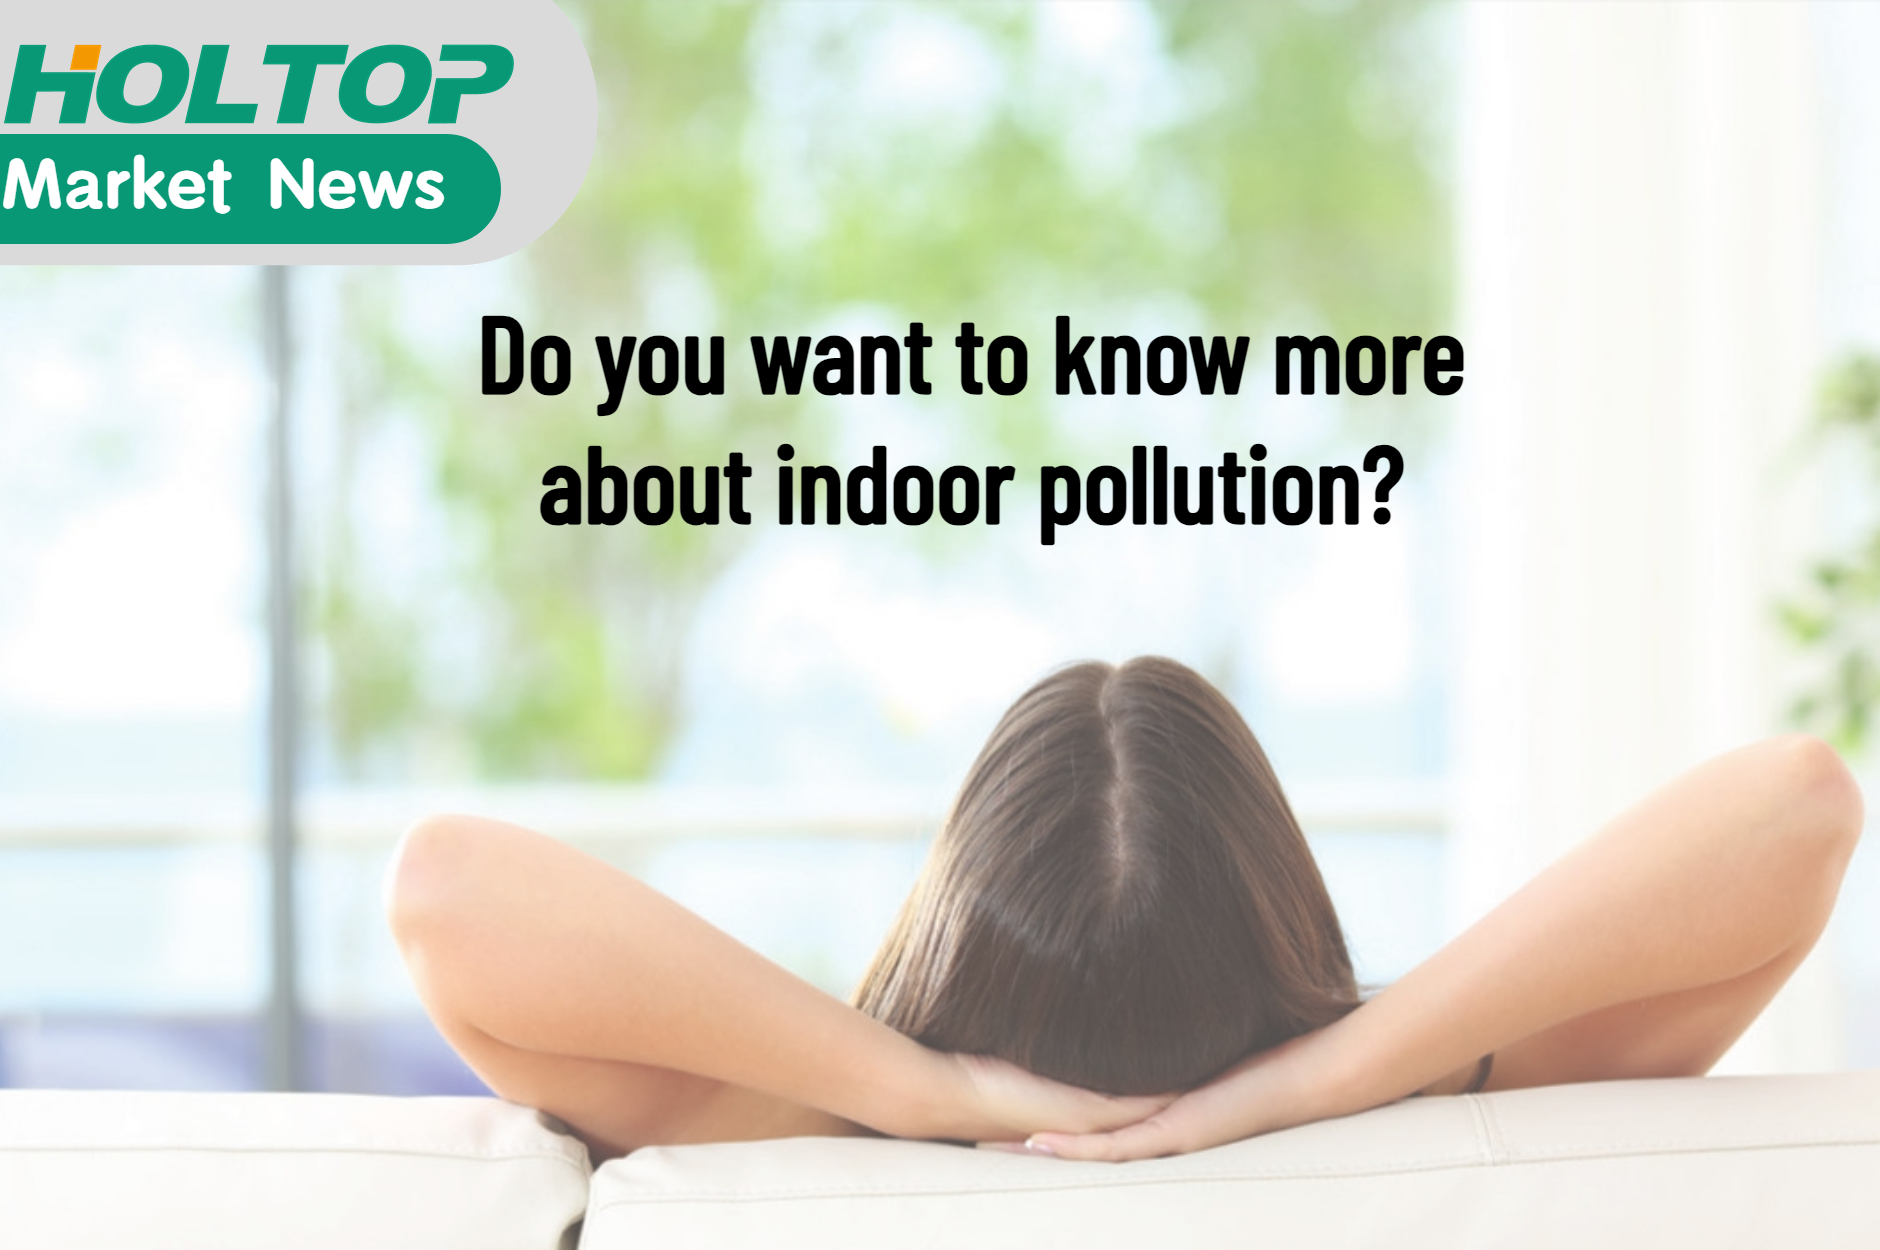 Chcesz dowiedzieć się więcej o zanieczyszczeniu powietrza w pomieszczeniach